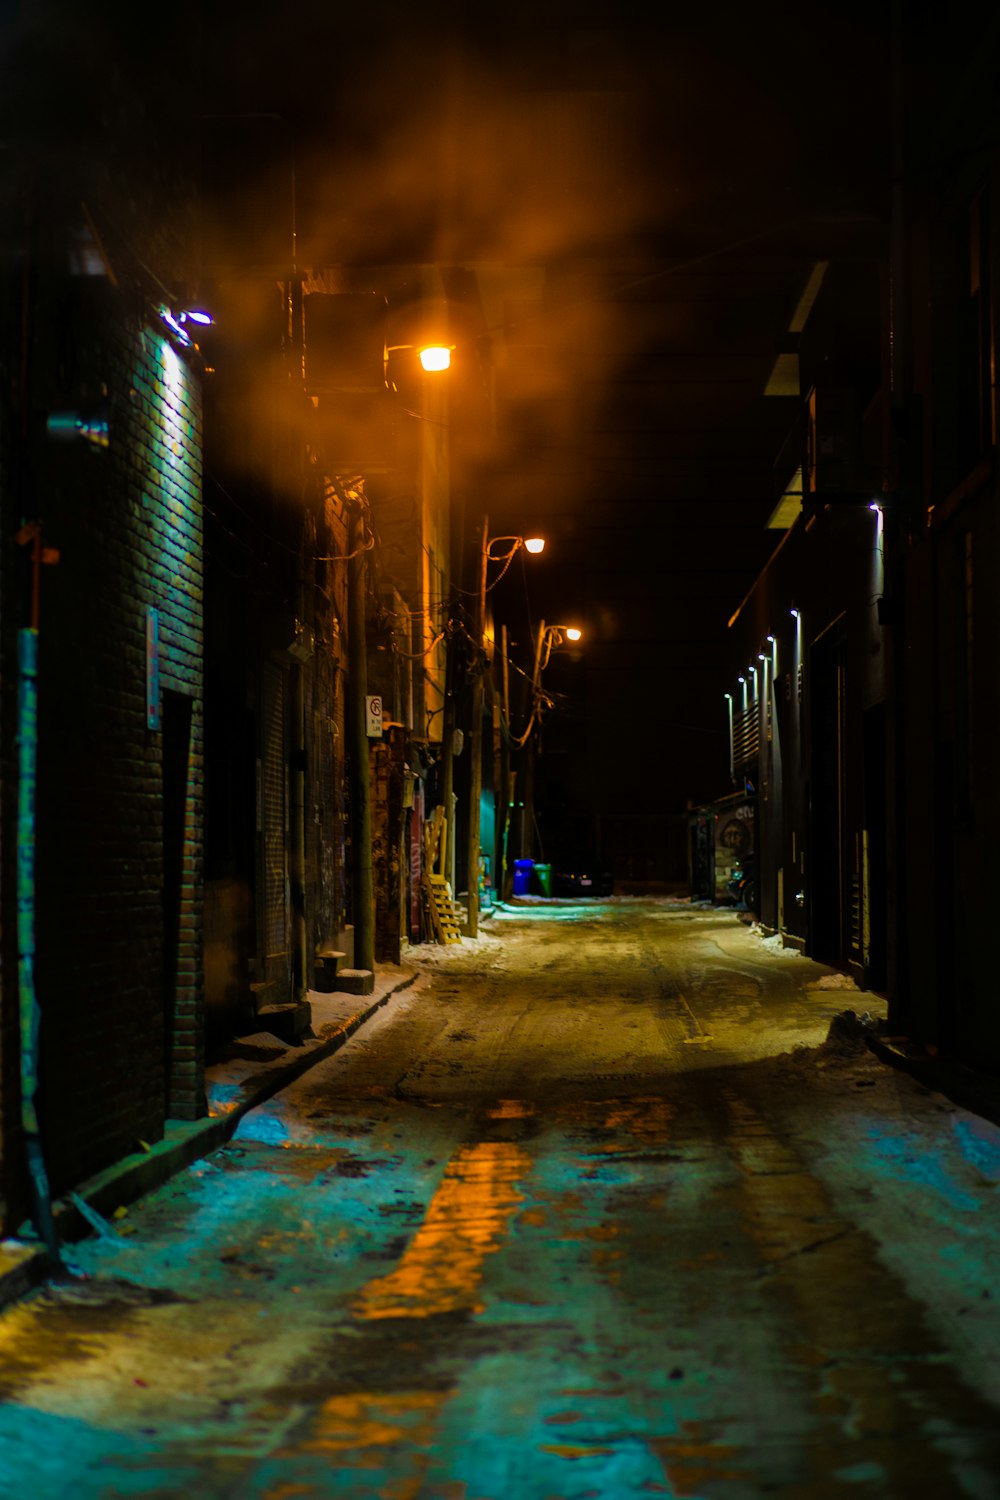 rue vide entre les bâtiments pendant la nuit